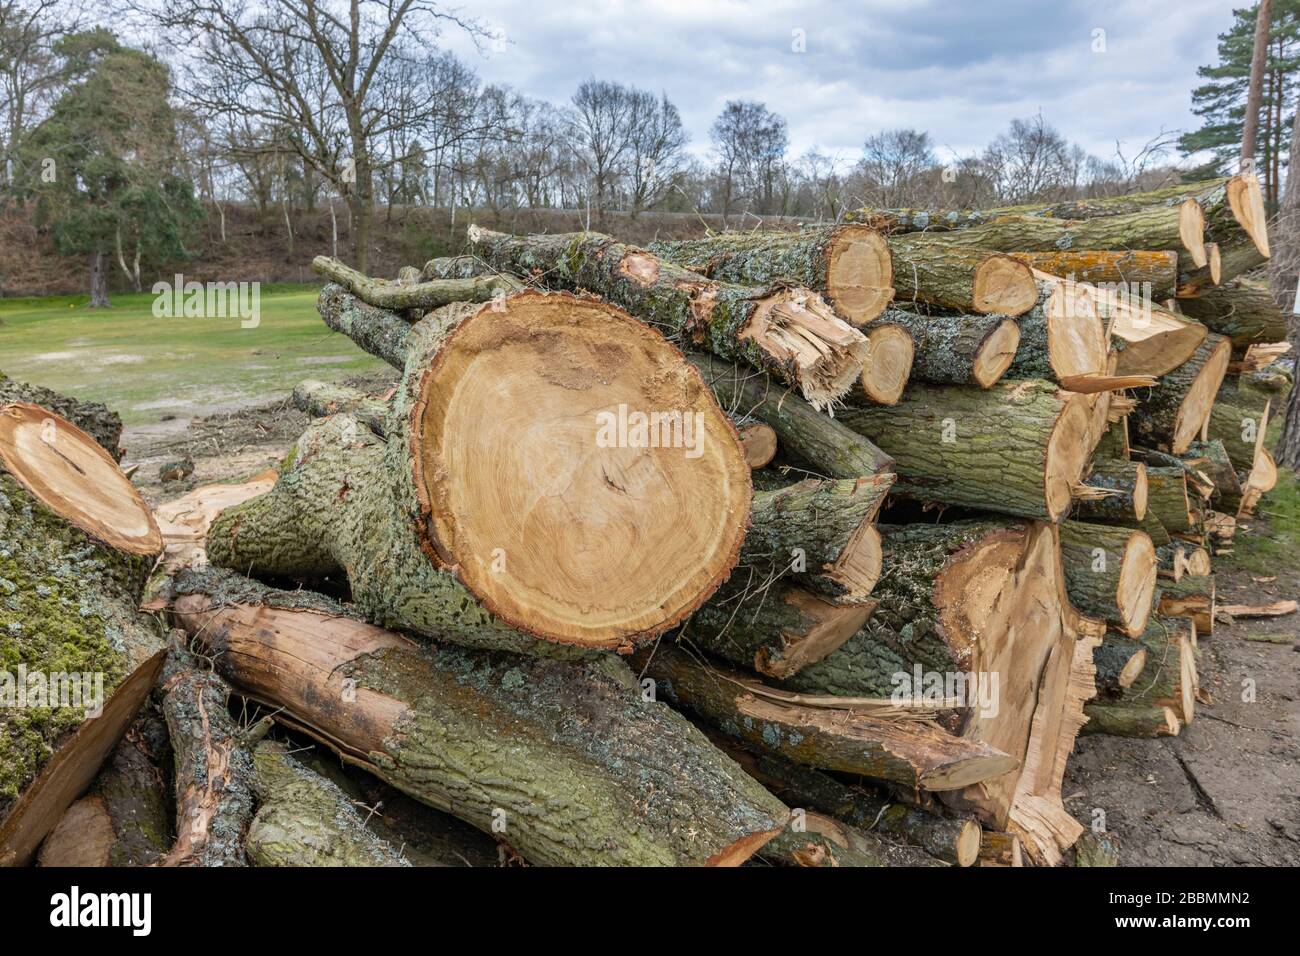 Tas de troncs de pins de pin sciés fraîchement coupés empilés pendant les opérations d'abattage et de déstockage des arbres, Surrey, sud-est de l'Angleterre Banque D'Images